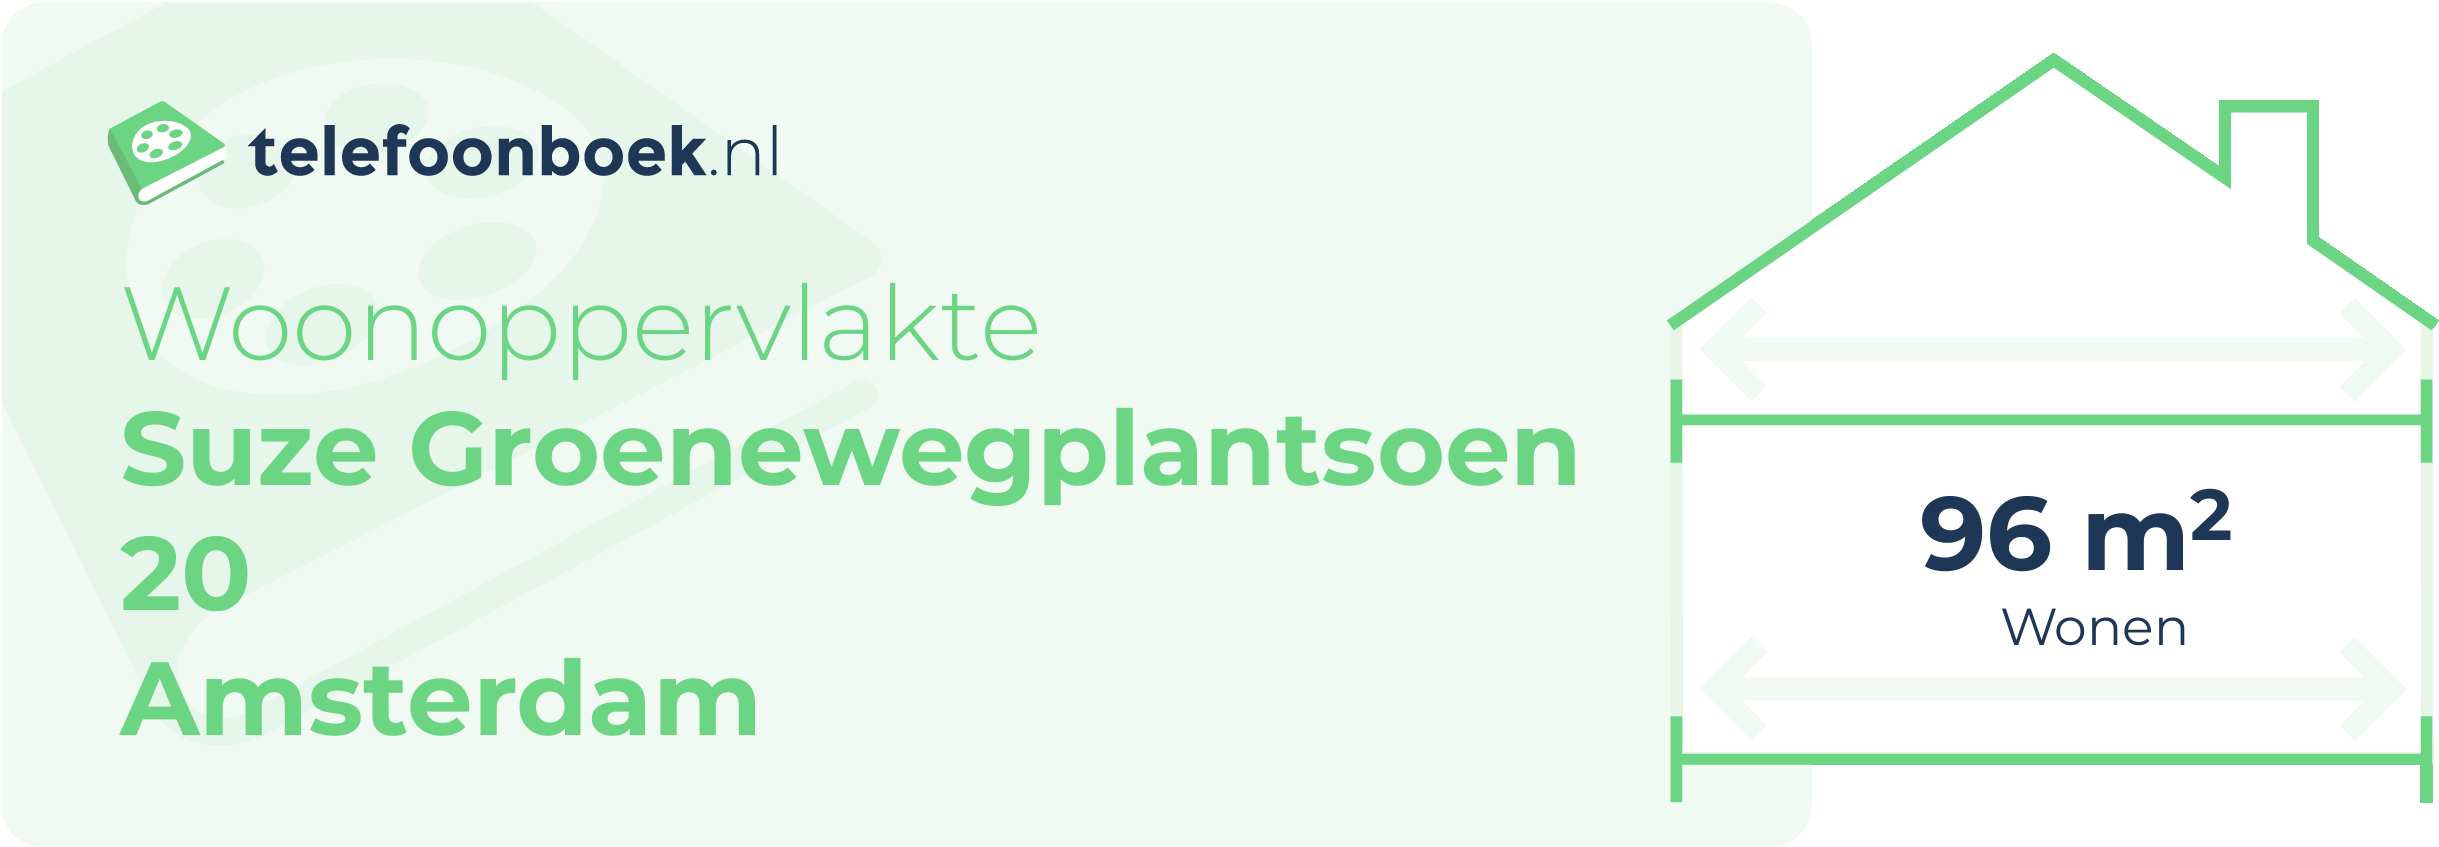 Woonoppervlakte Suze Groenewegplantsoen 20 Amsterdam